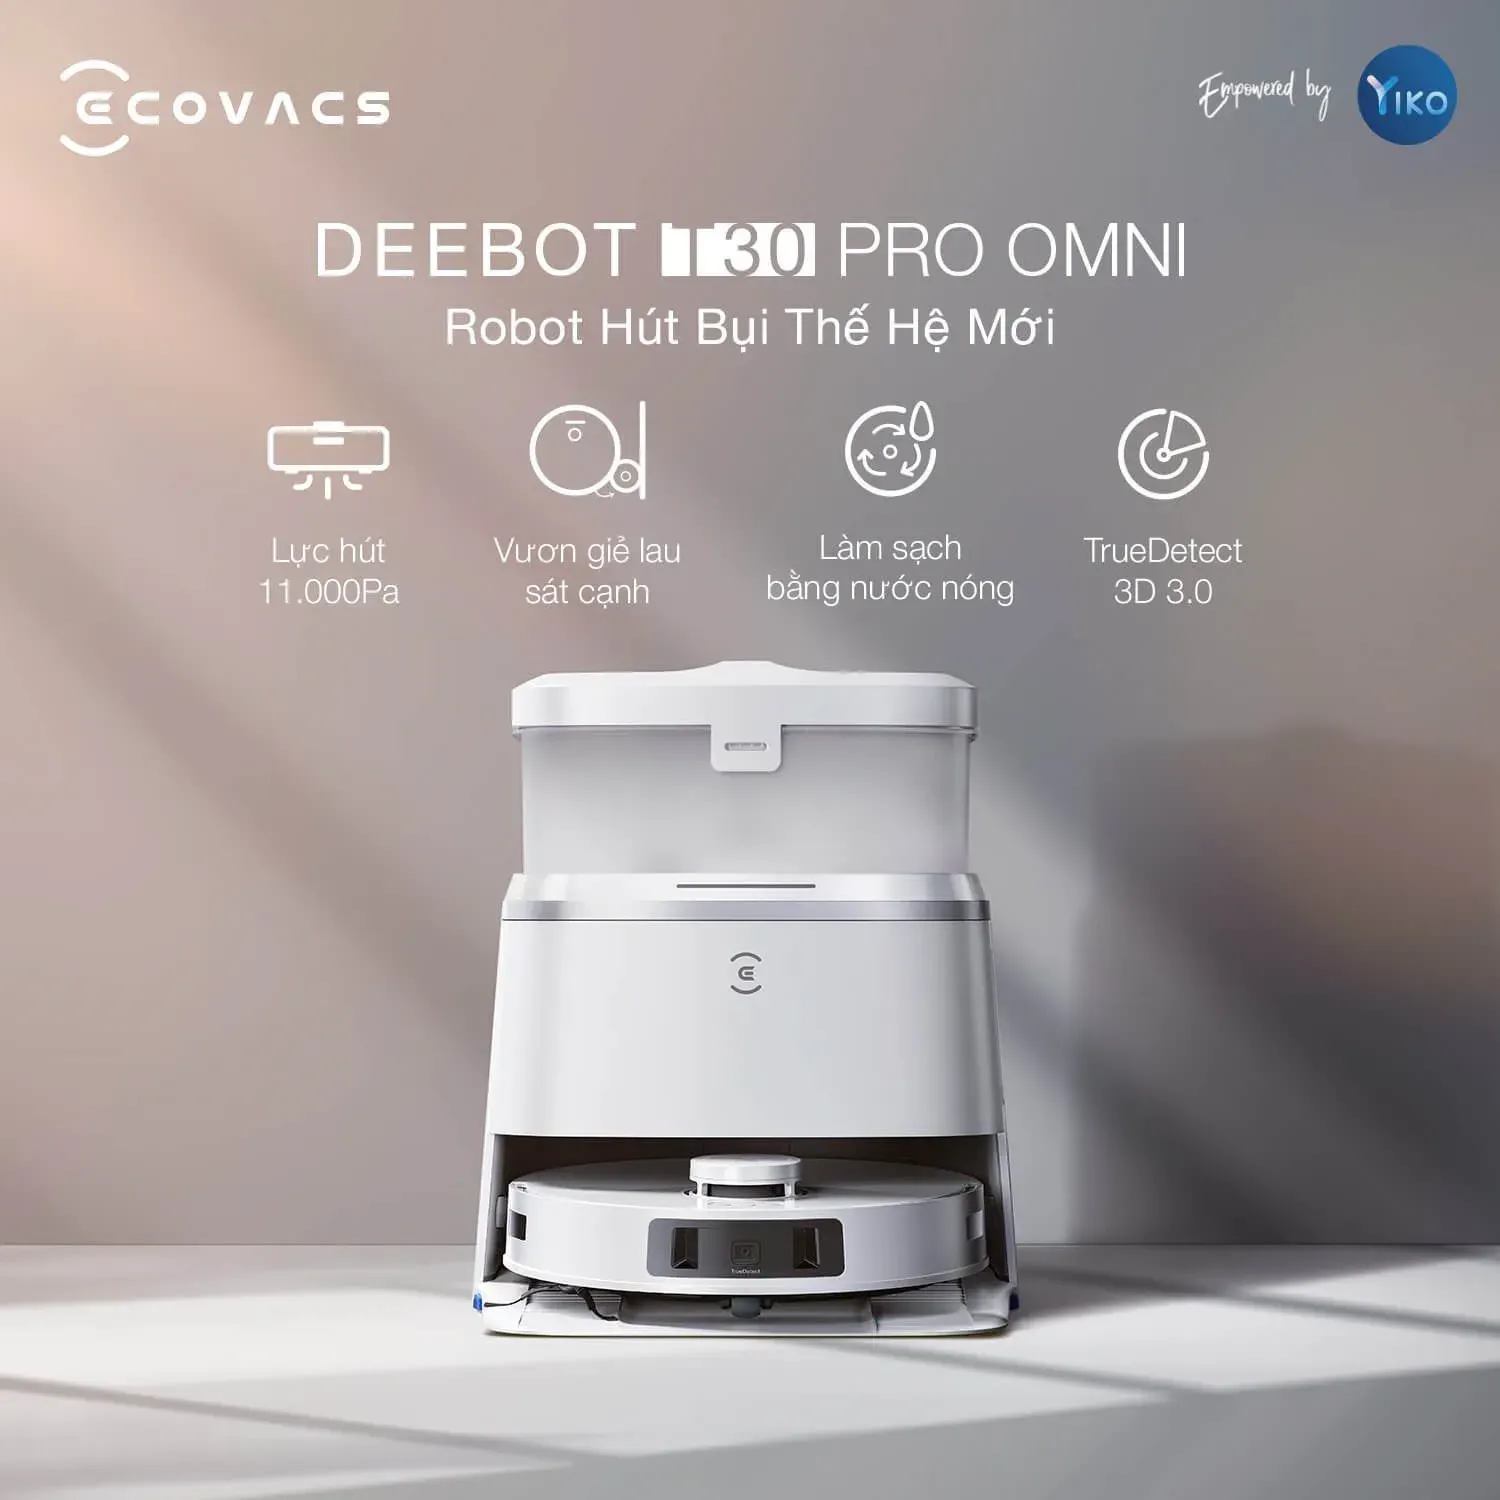 ECOVACS DEEBOT T30 Pro Omni: Nâng tầm cuộc sống với robot lau nhà thông minh